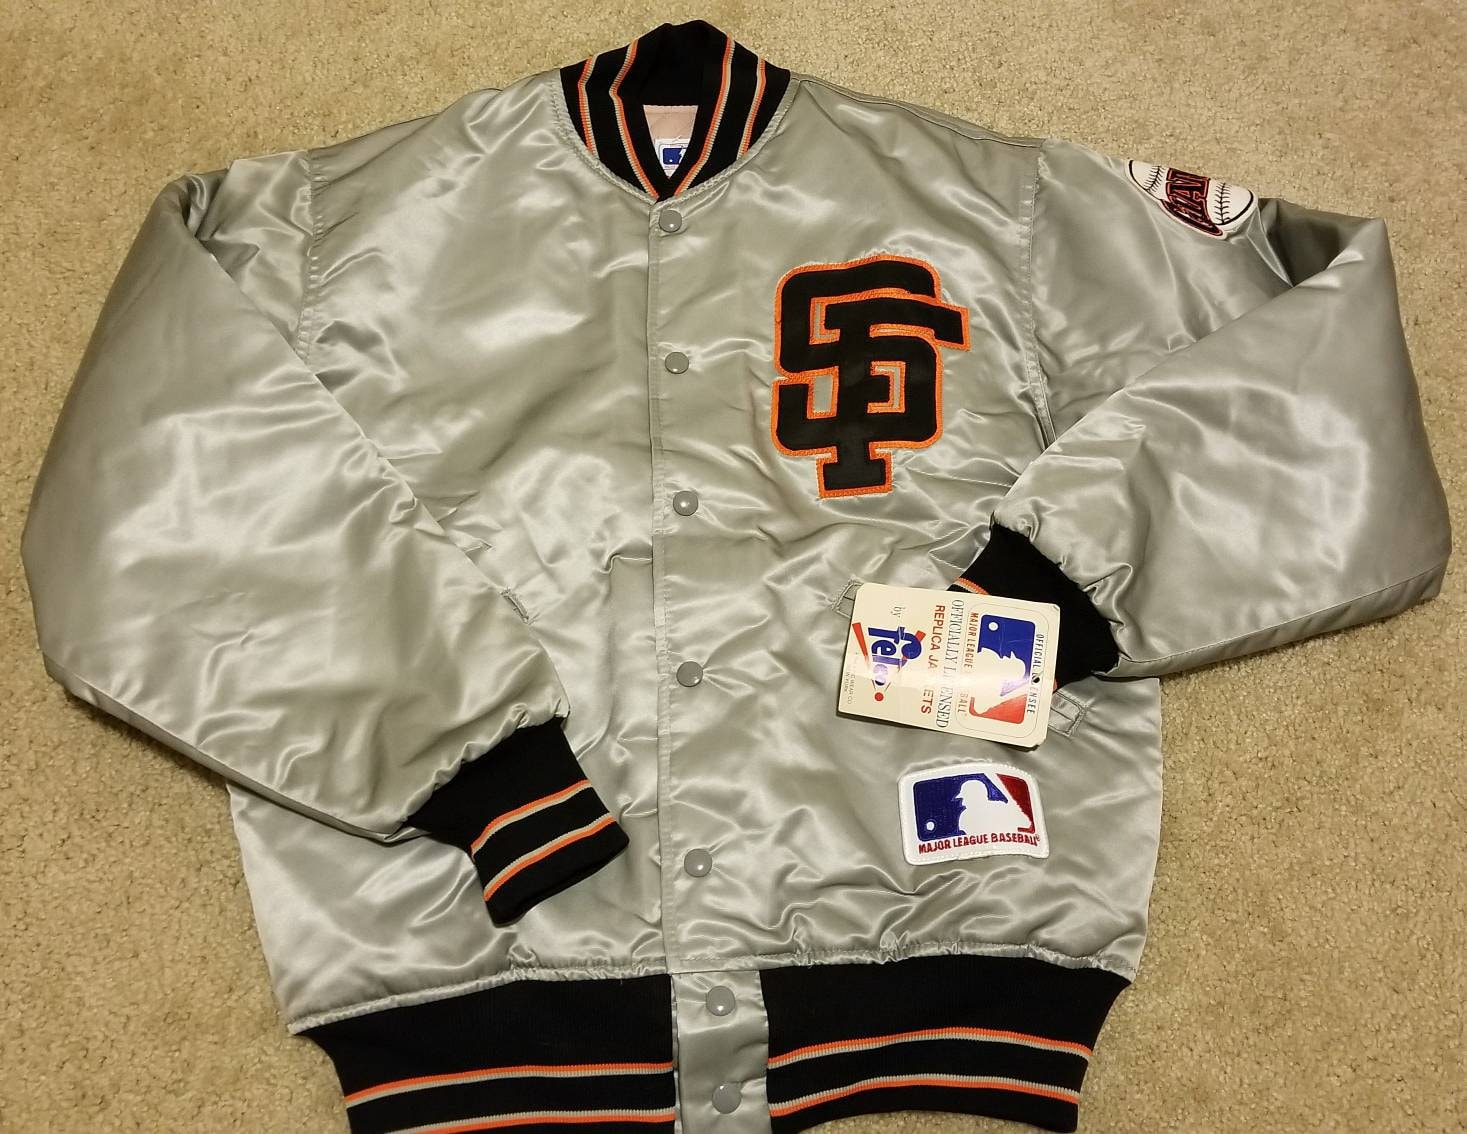 vintage sf giants starter jacket